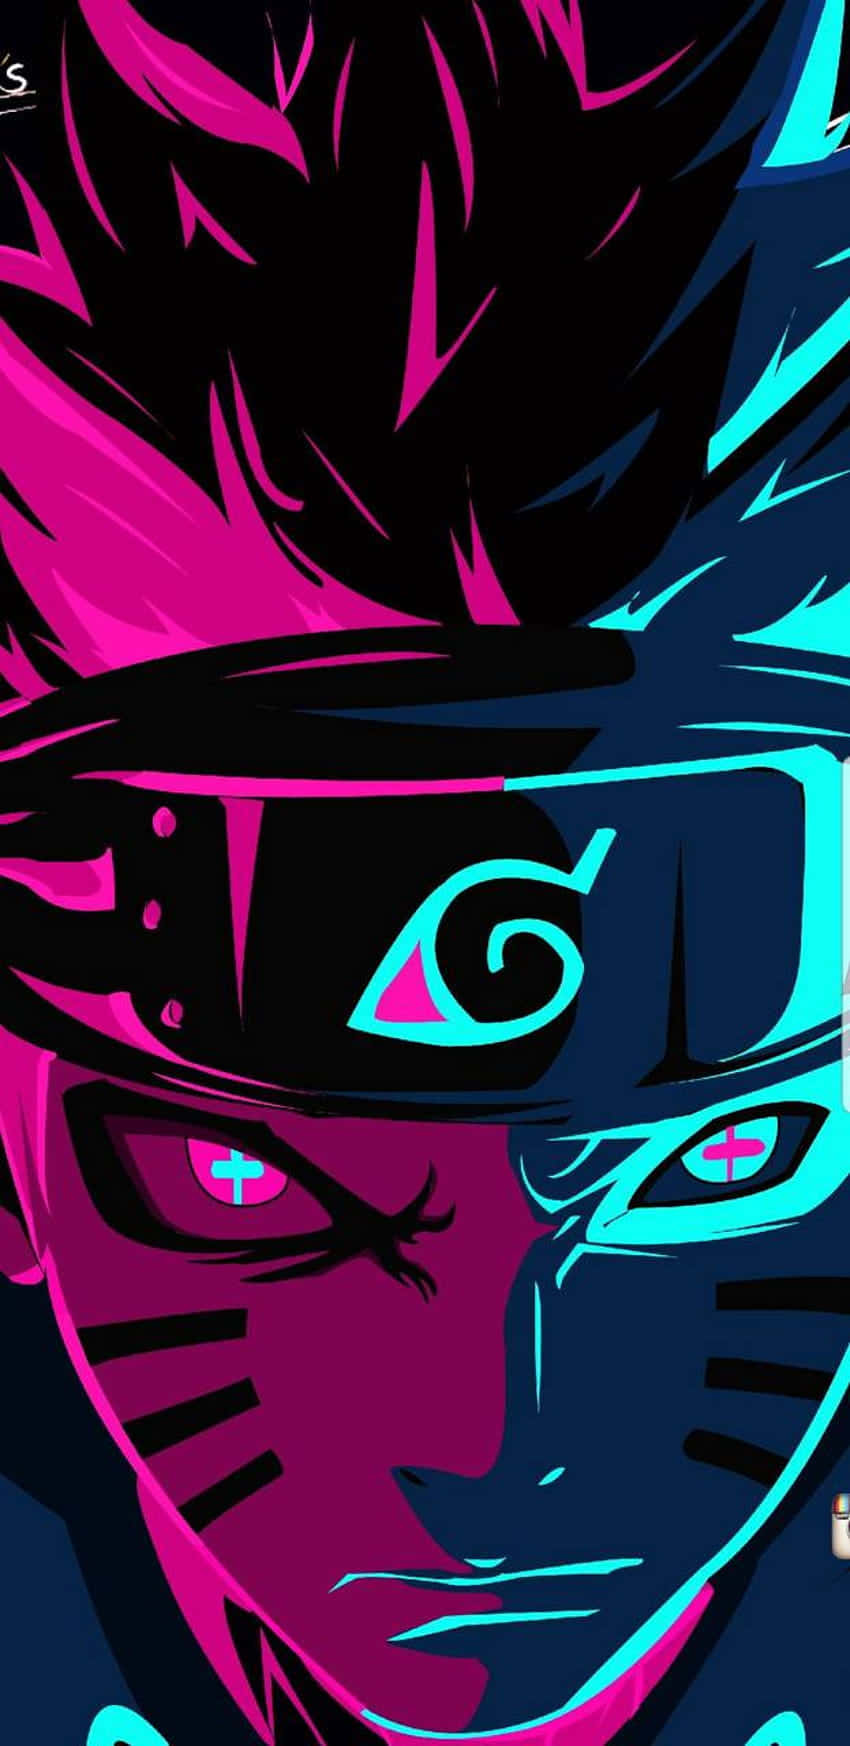 Papel De Parede De Celular Estético De Naruto Em Neon Rosa E Azul: Papel de Parede